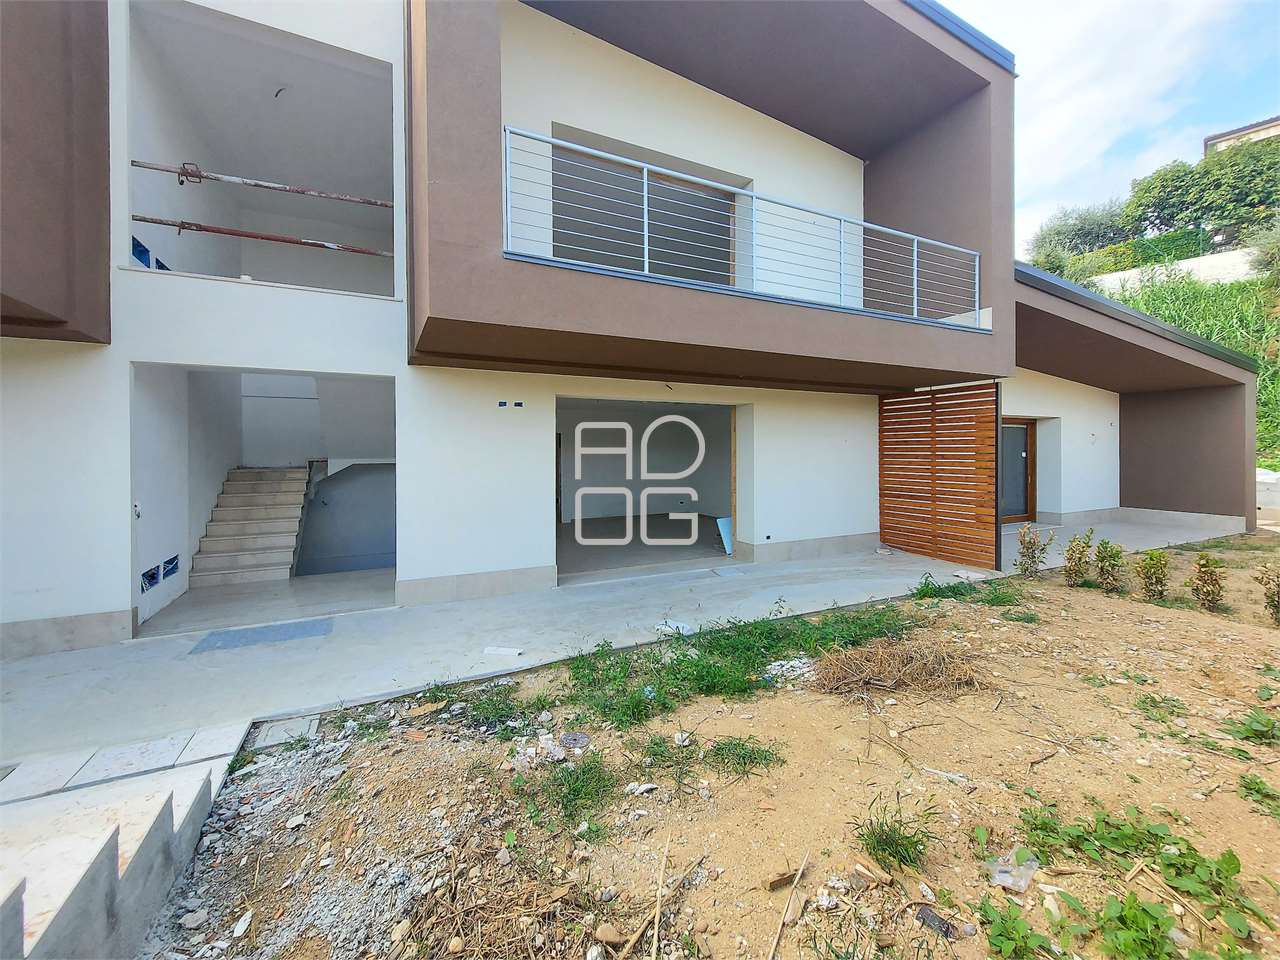 Neue Wohnung mit Garten 1 km vom See entfernt in San Felice del Benaco